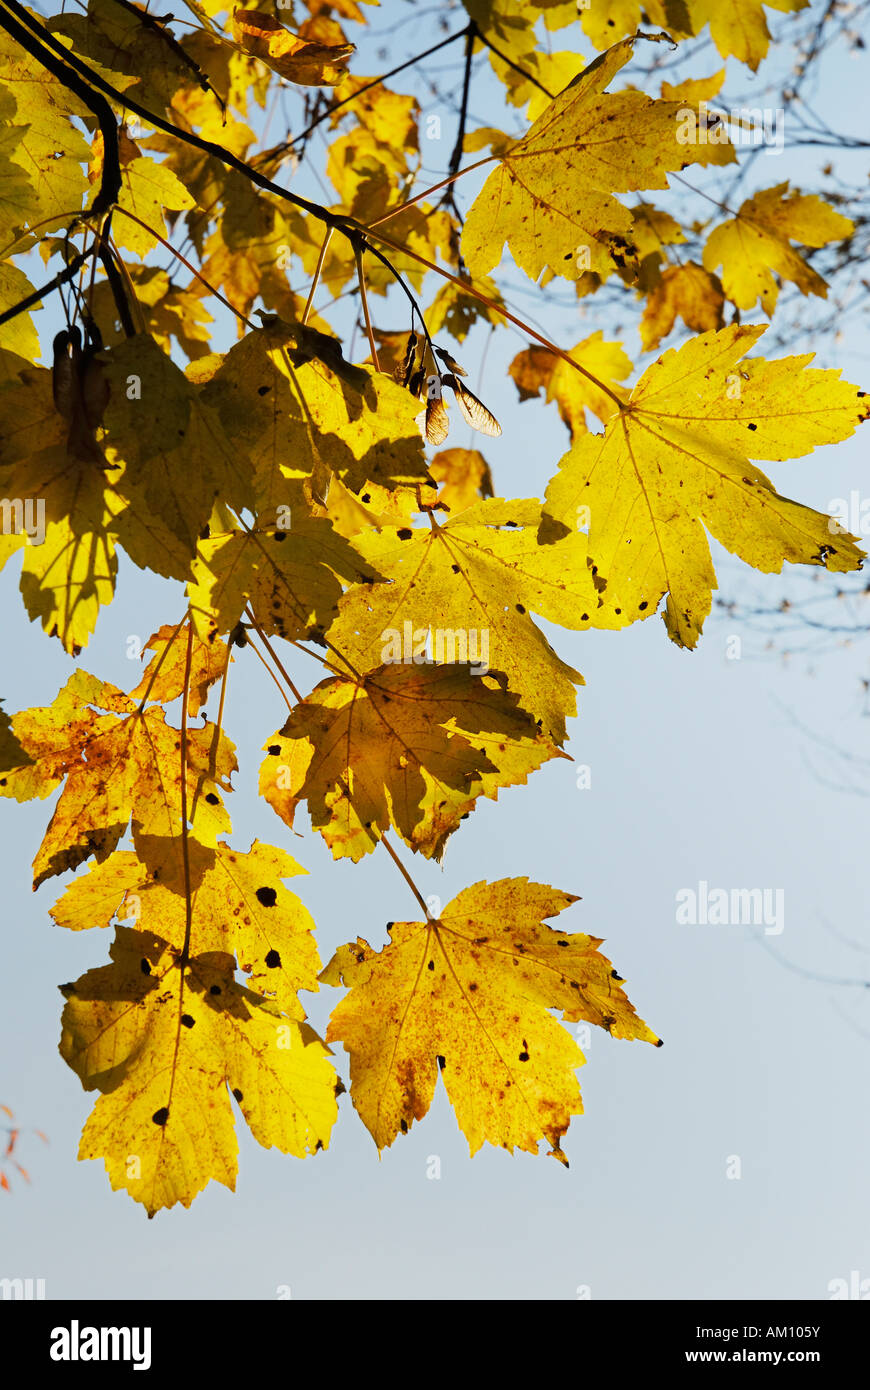 Couleur d'automne feuilles d'érable, acer palntanus Aaceraceae L. Banque D'Images